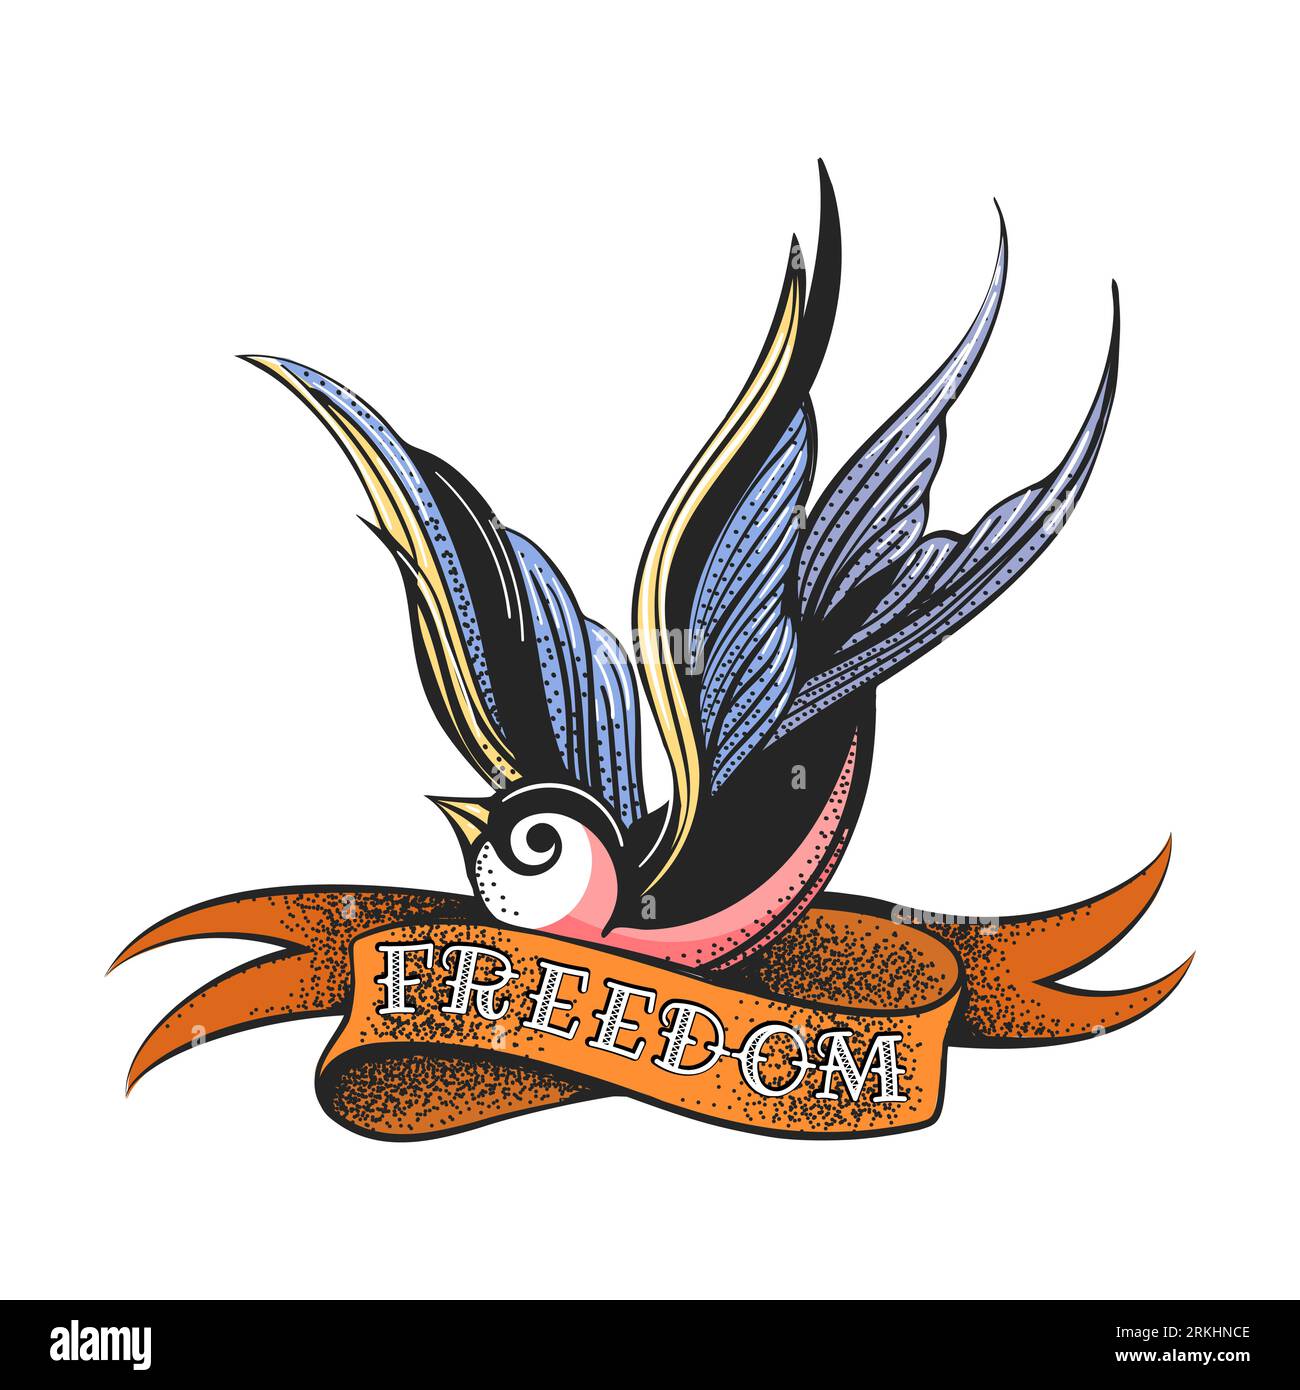 Farbige Tätowierung von Swallow Bird und Ribbon mit der Aufschrift Freedom Isolated auf weißem Hintergrund. Vektorillustration Stock Vektor